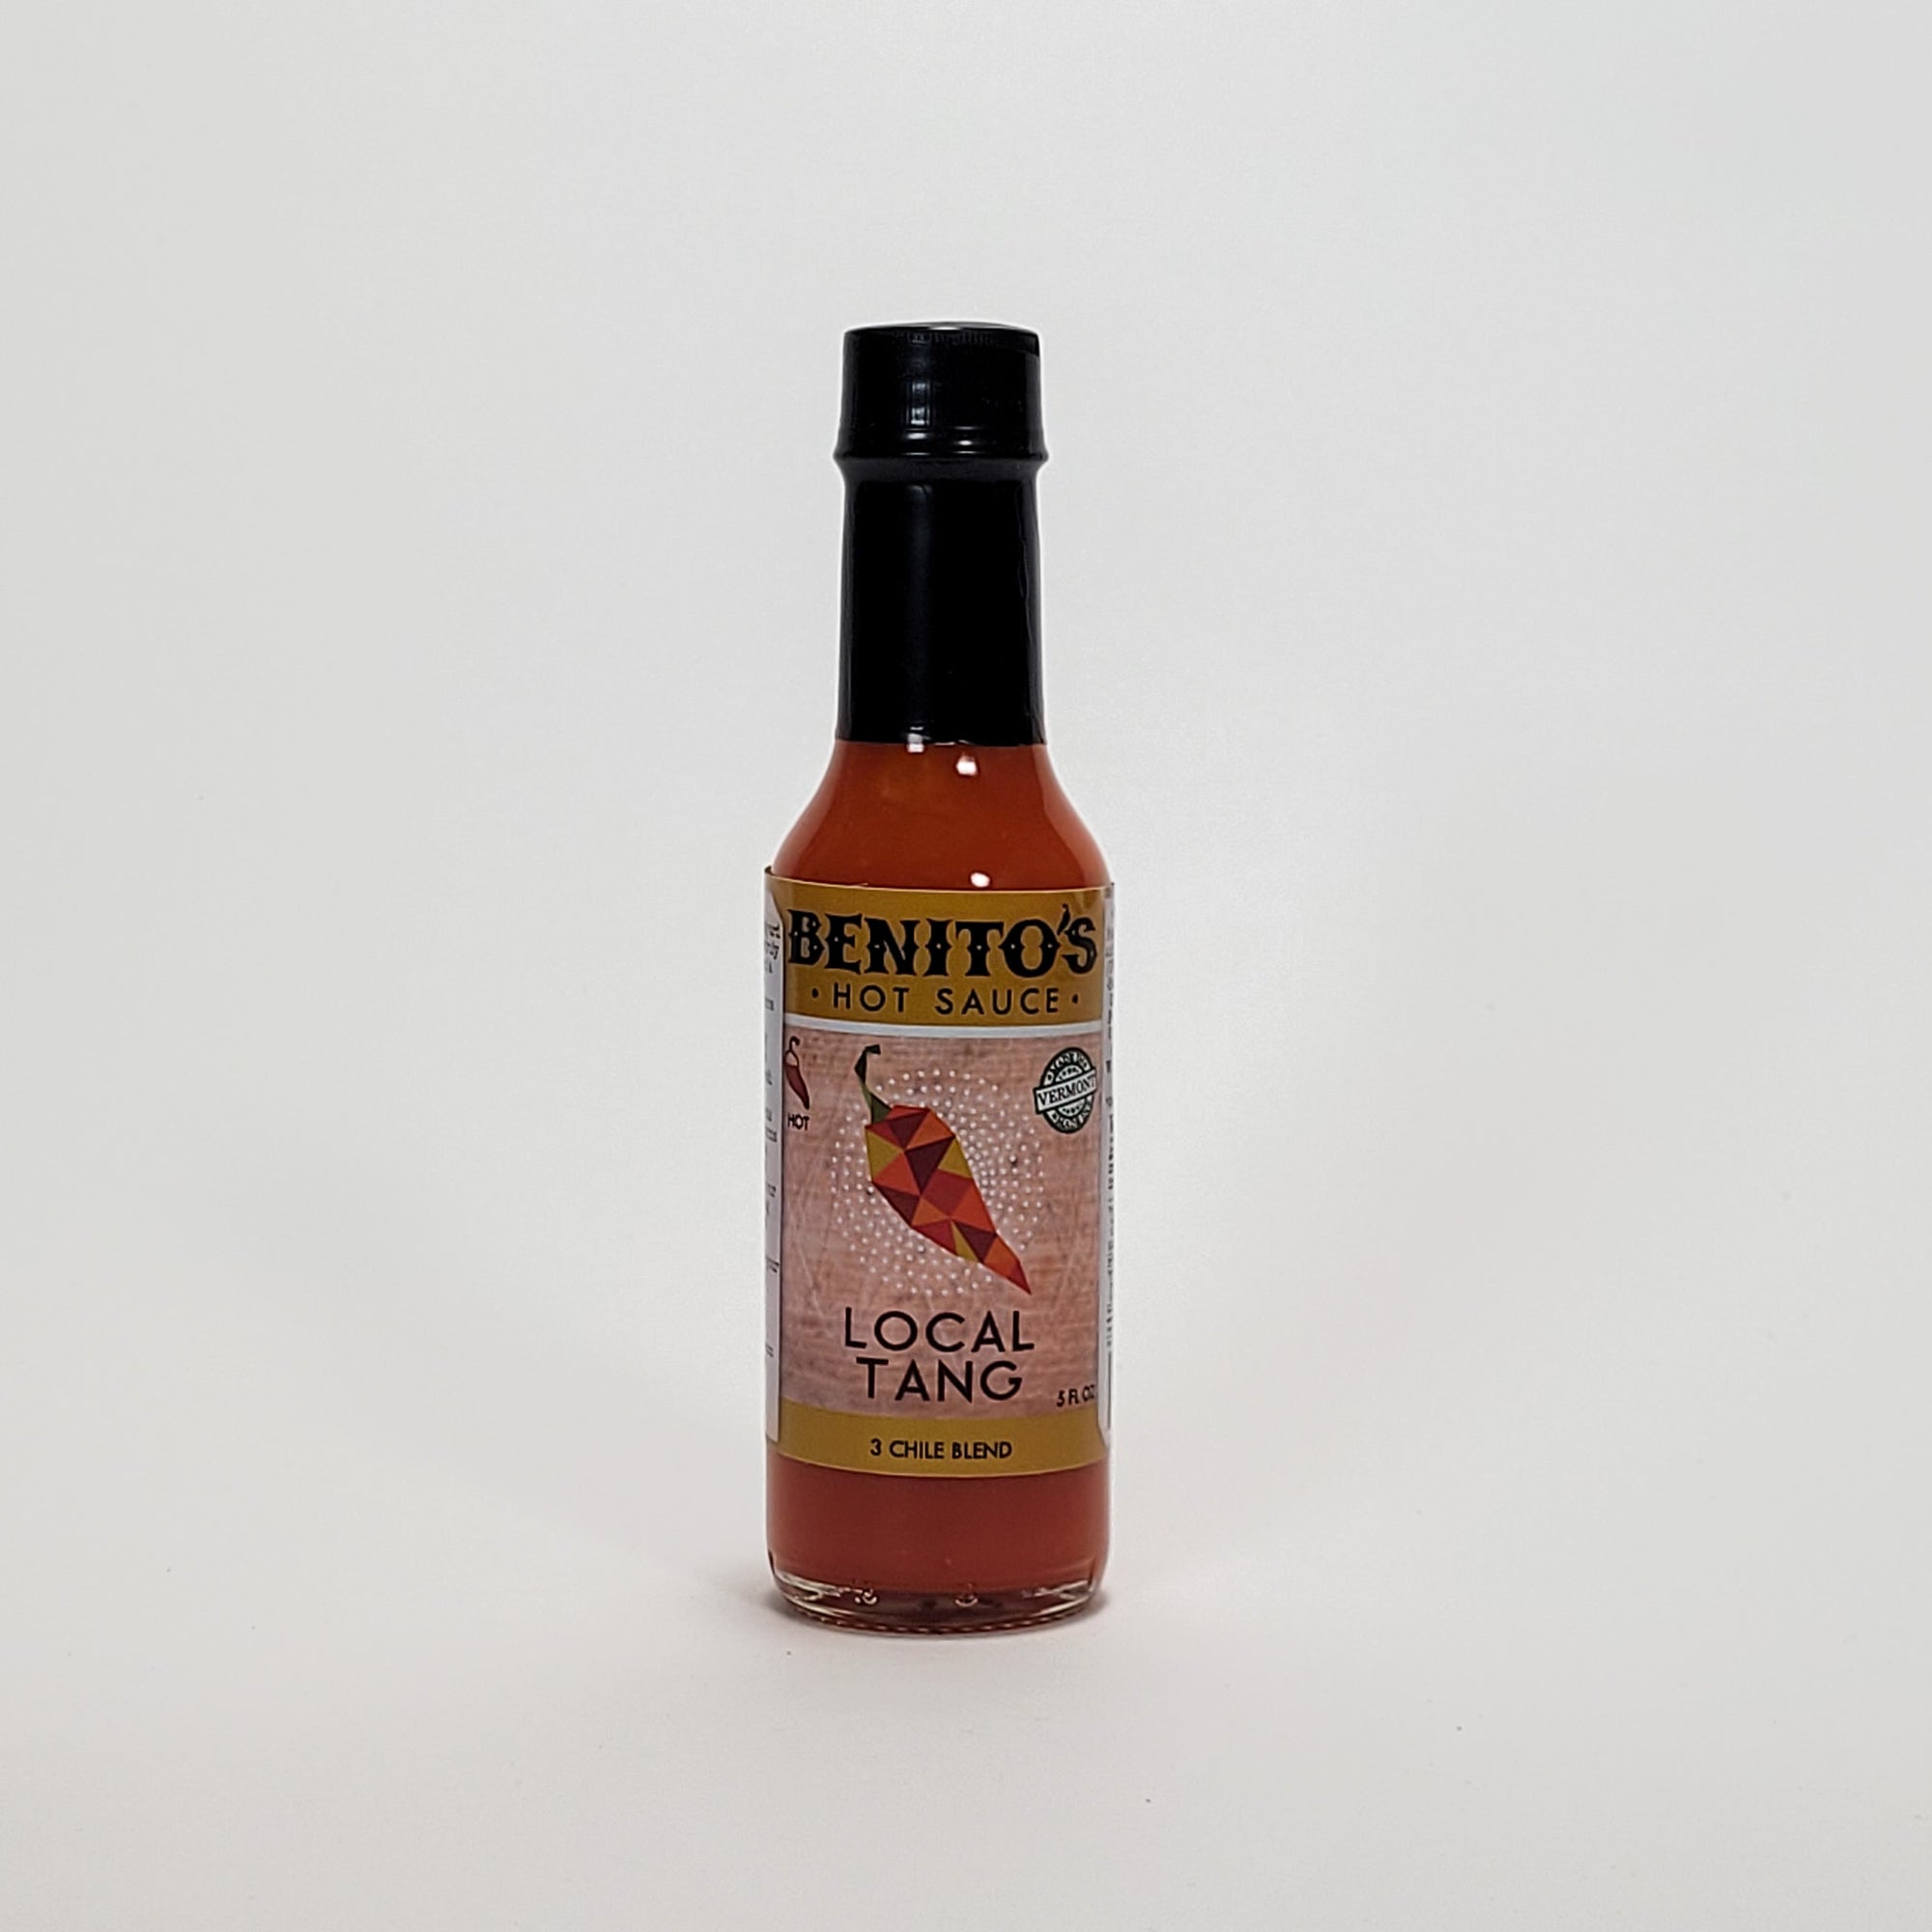 Benito's Local Tang hot sauce